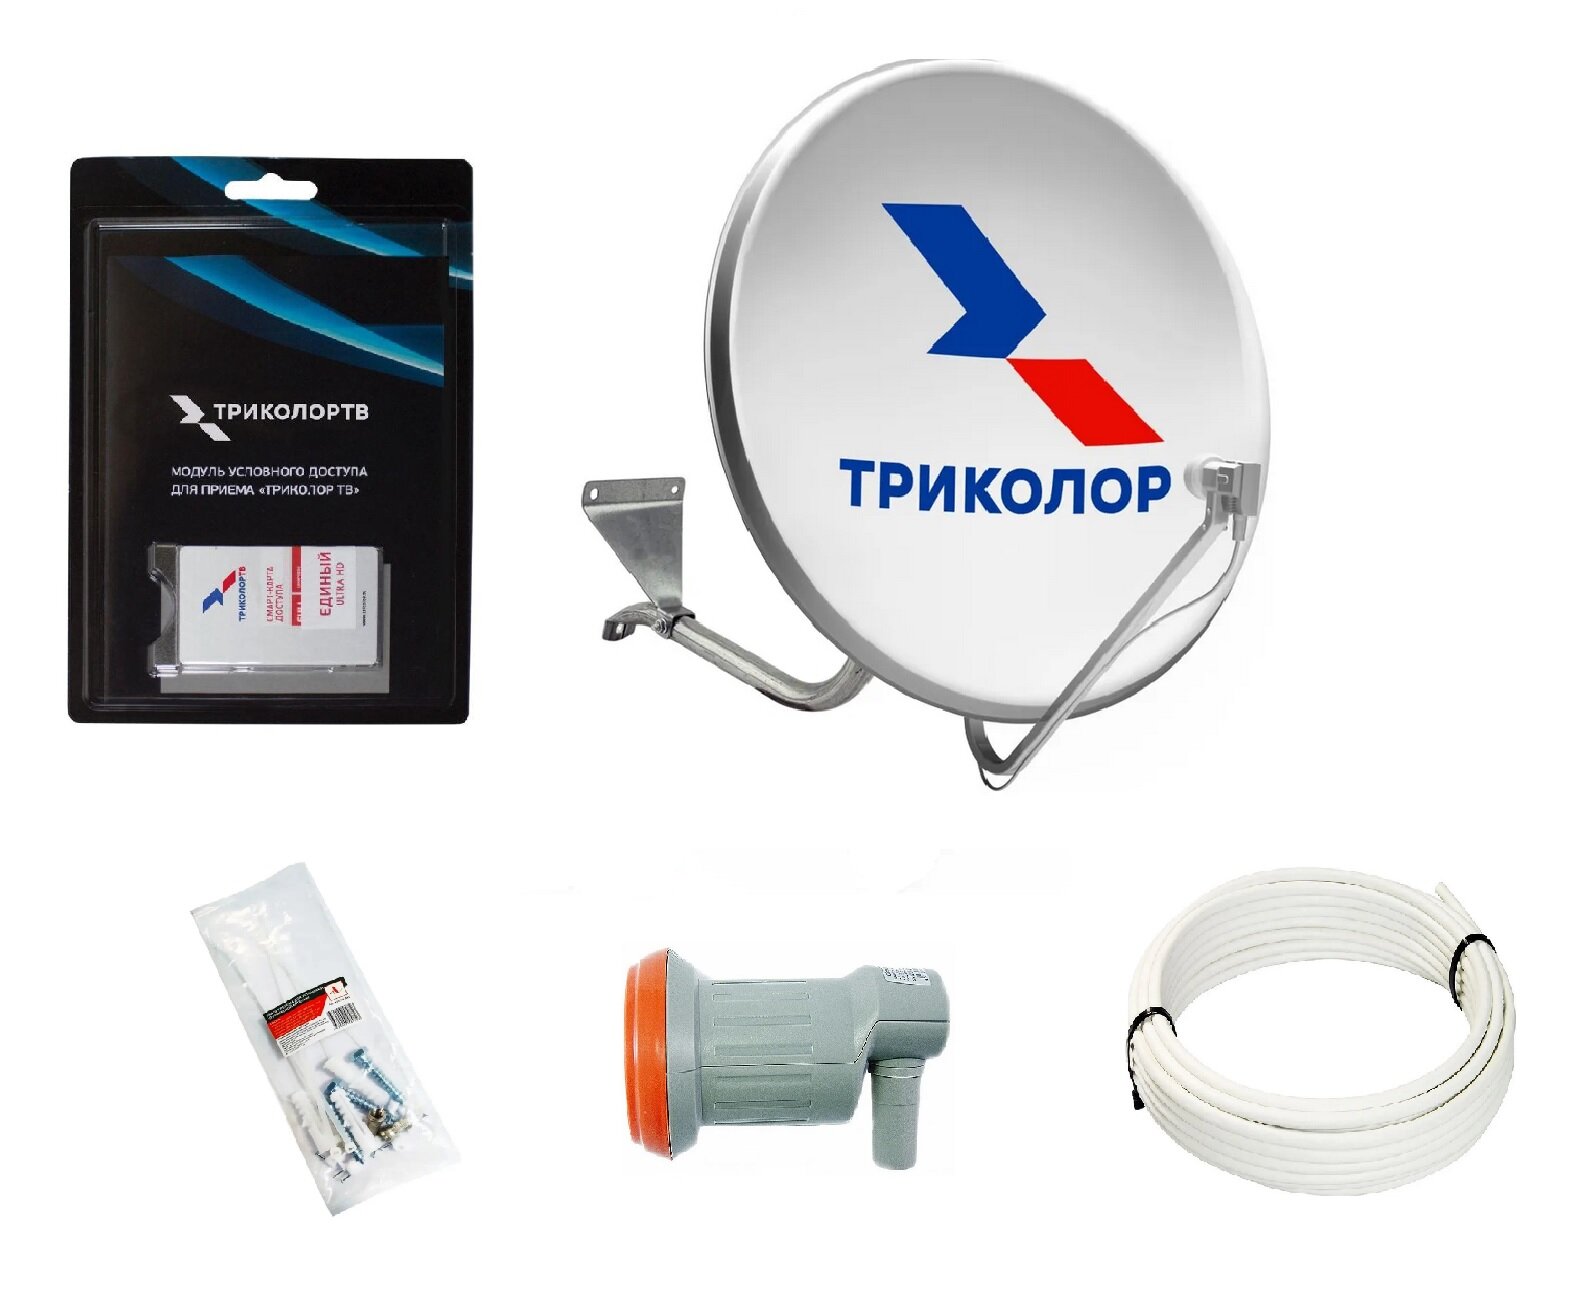 Комплект спутникового ТВ Триколор с модулем условного доступа+подписка 7 дней (Центр, Единый Ультра HD, 2500 руб./год)